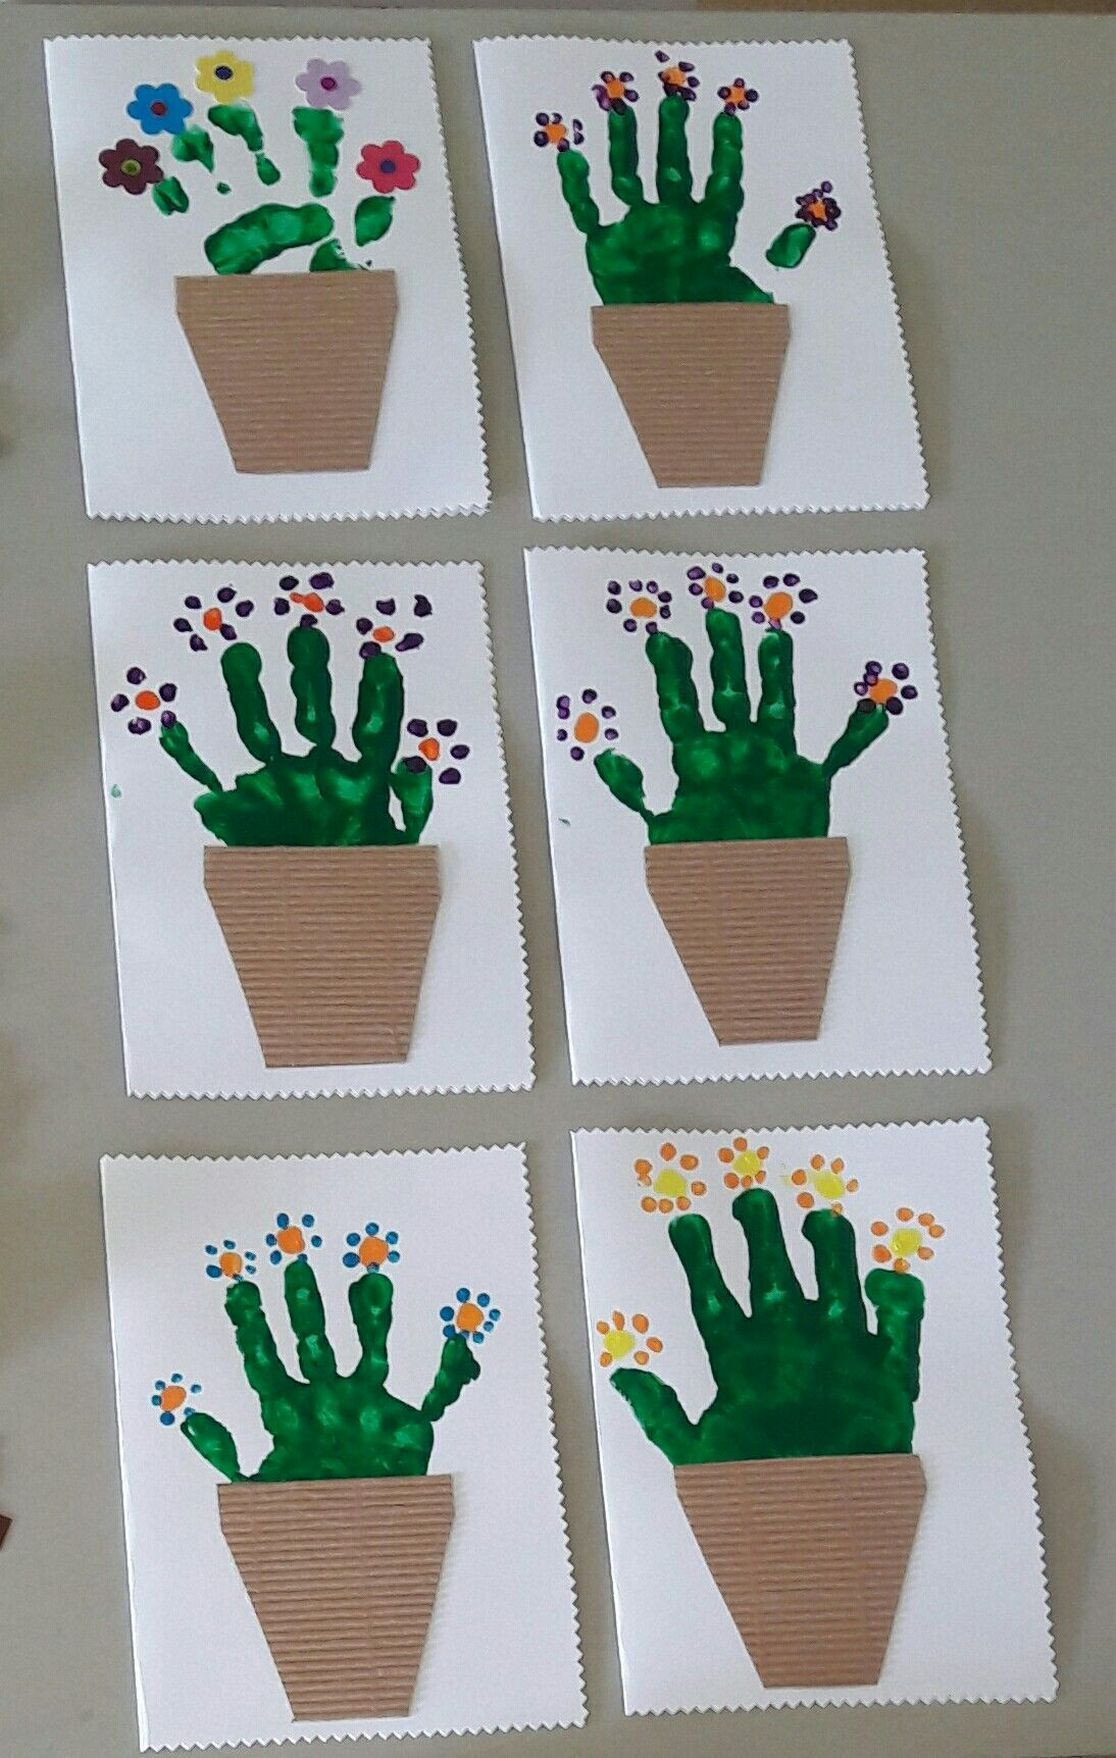 Creative Art Activities For Preschoolers
 Spring crafts preschool creative art ideas 34